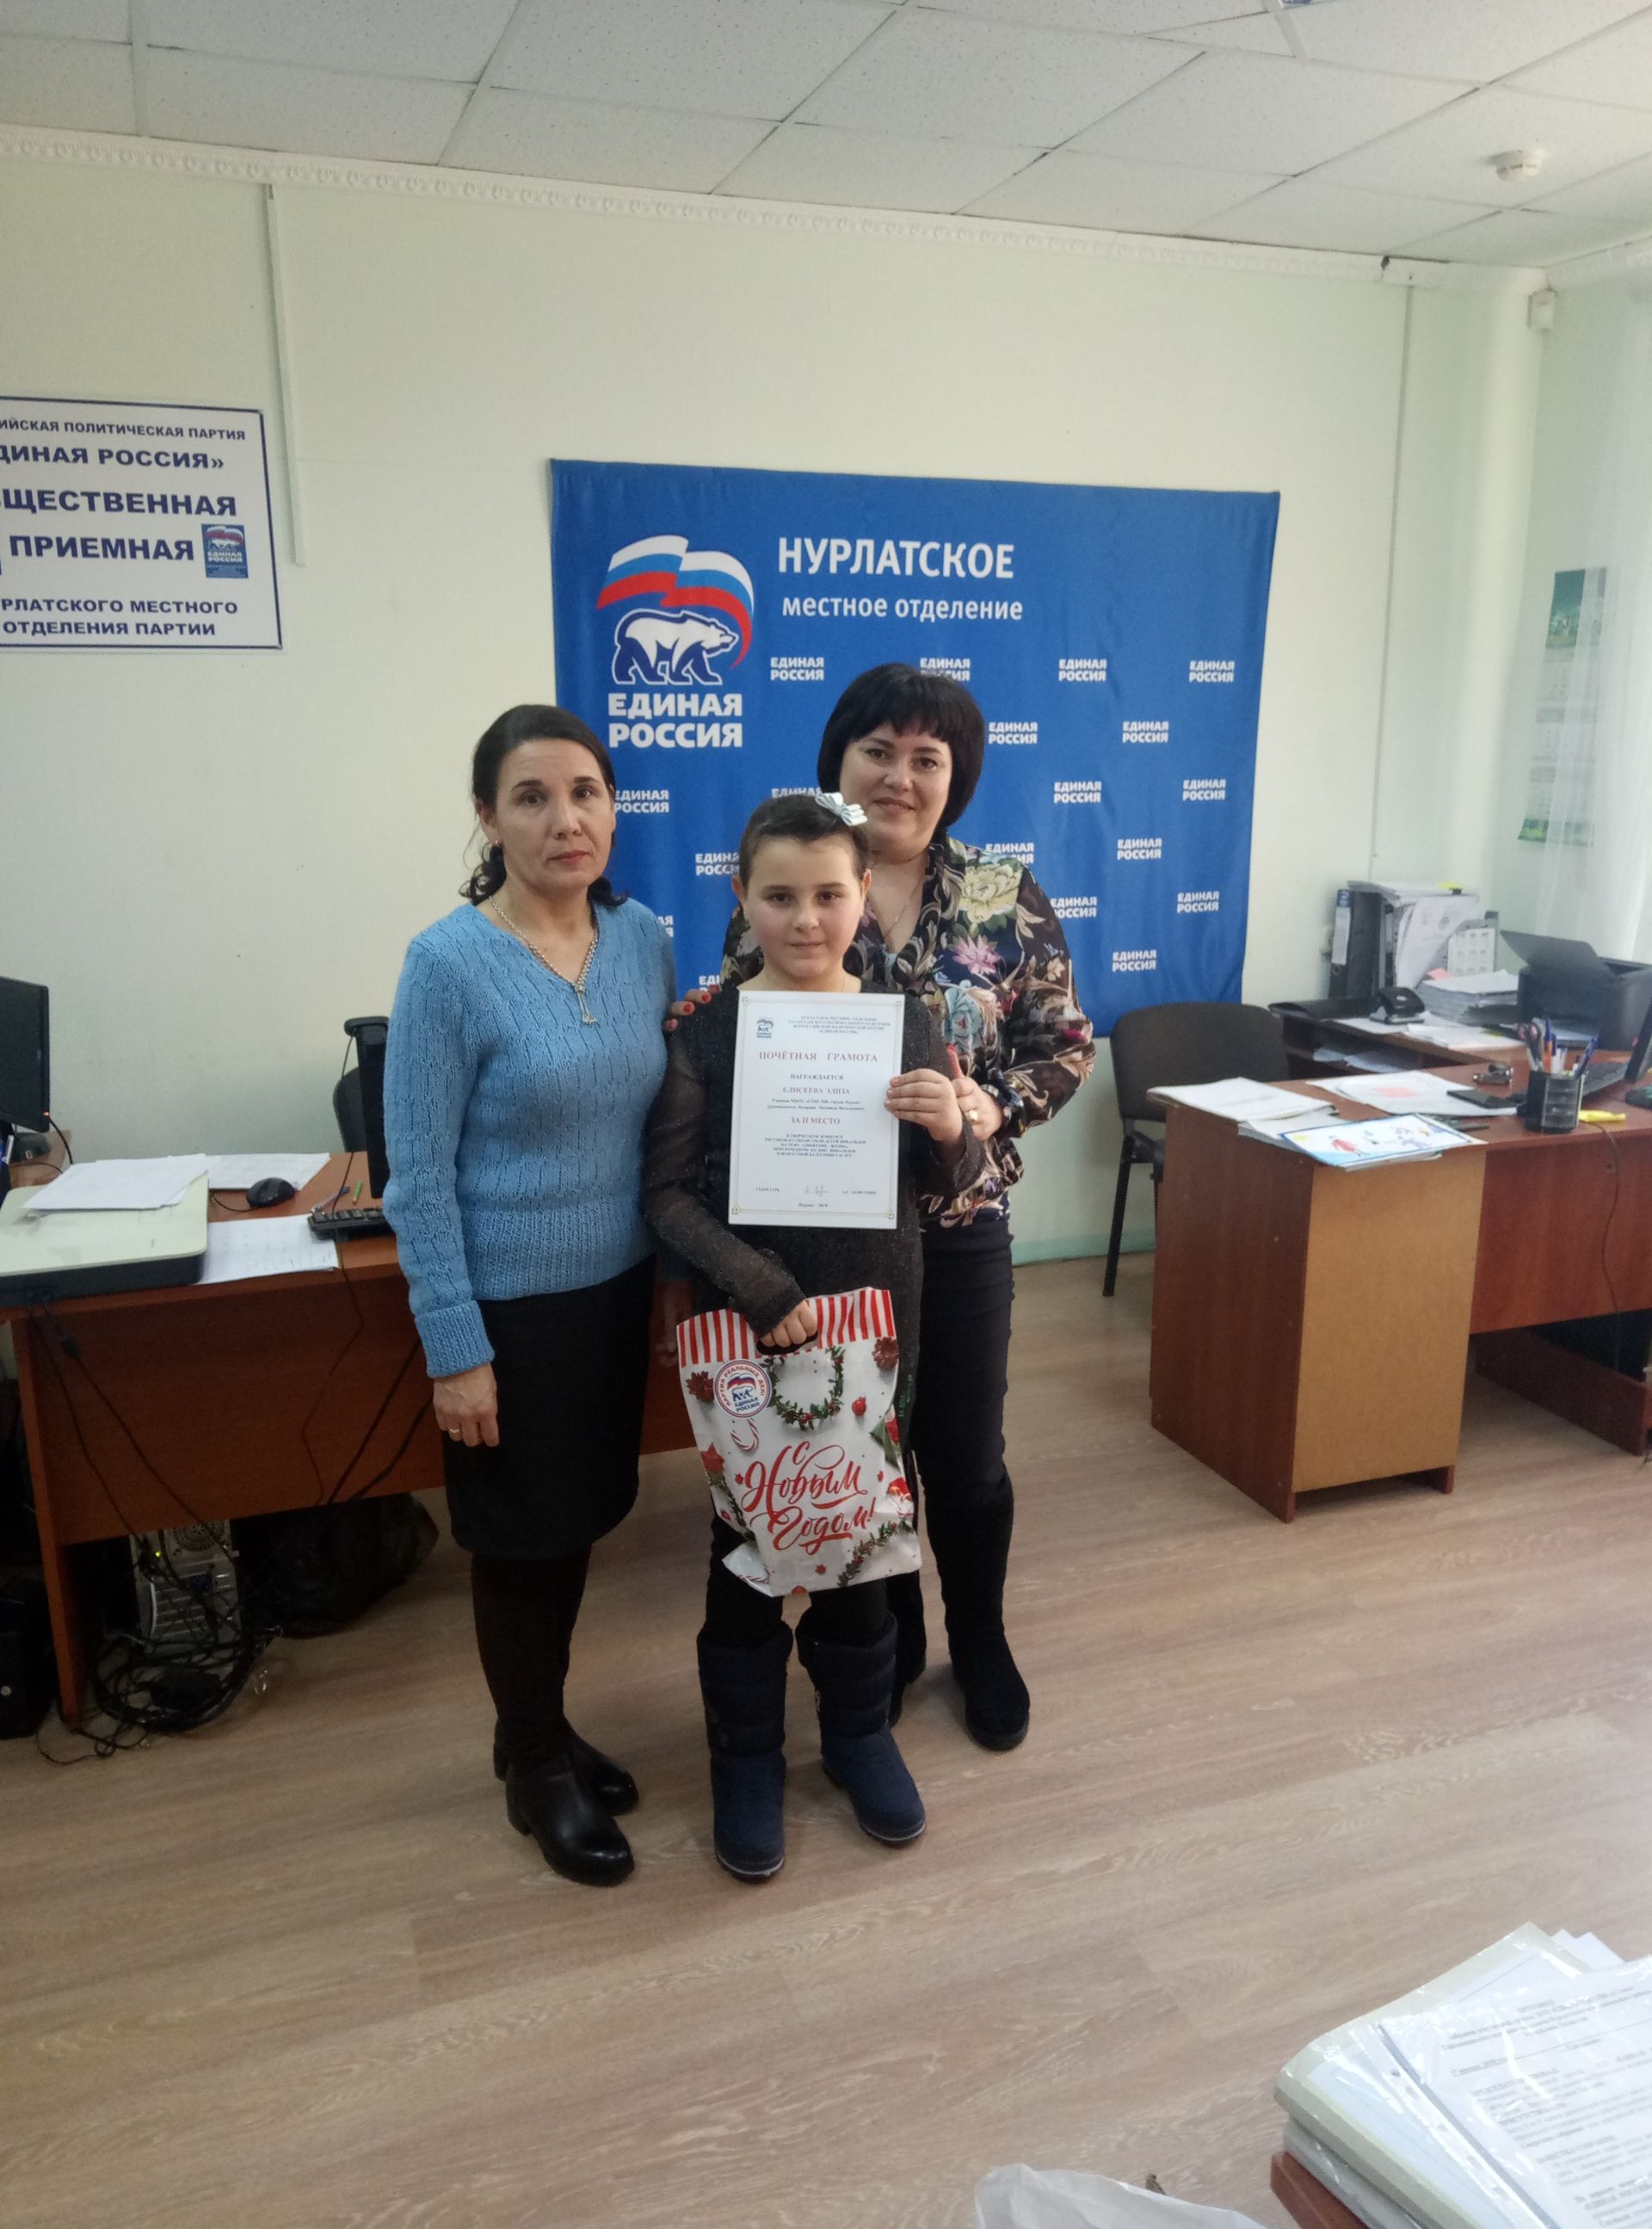 Нурлатские дети получили награды за победу в конкурсе «Единой России»